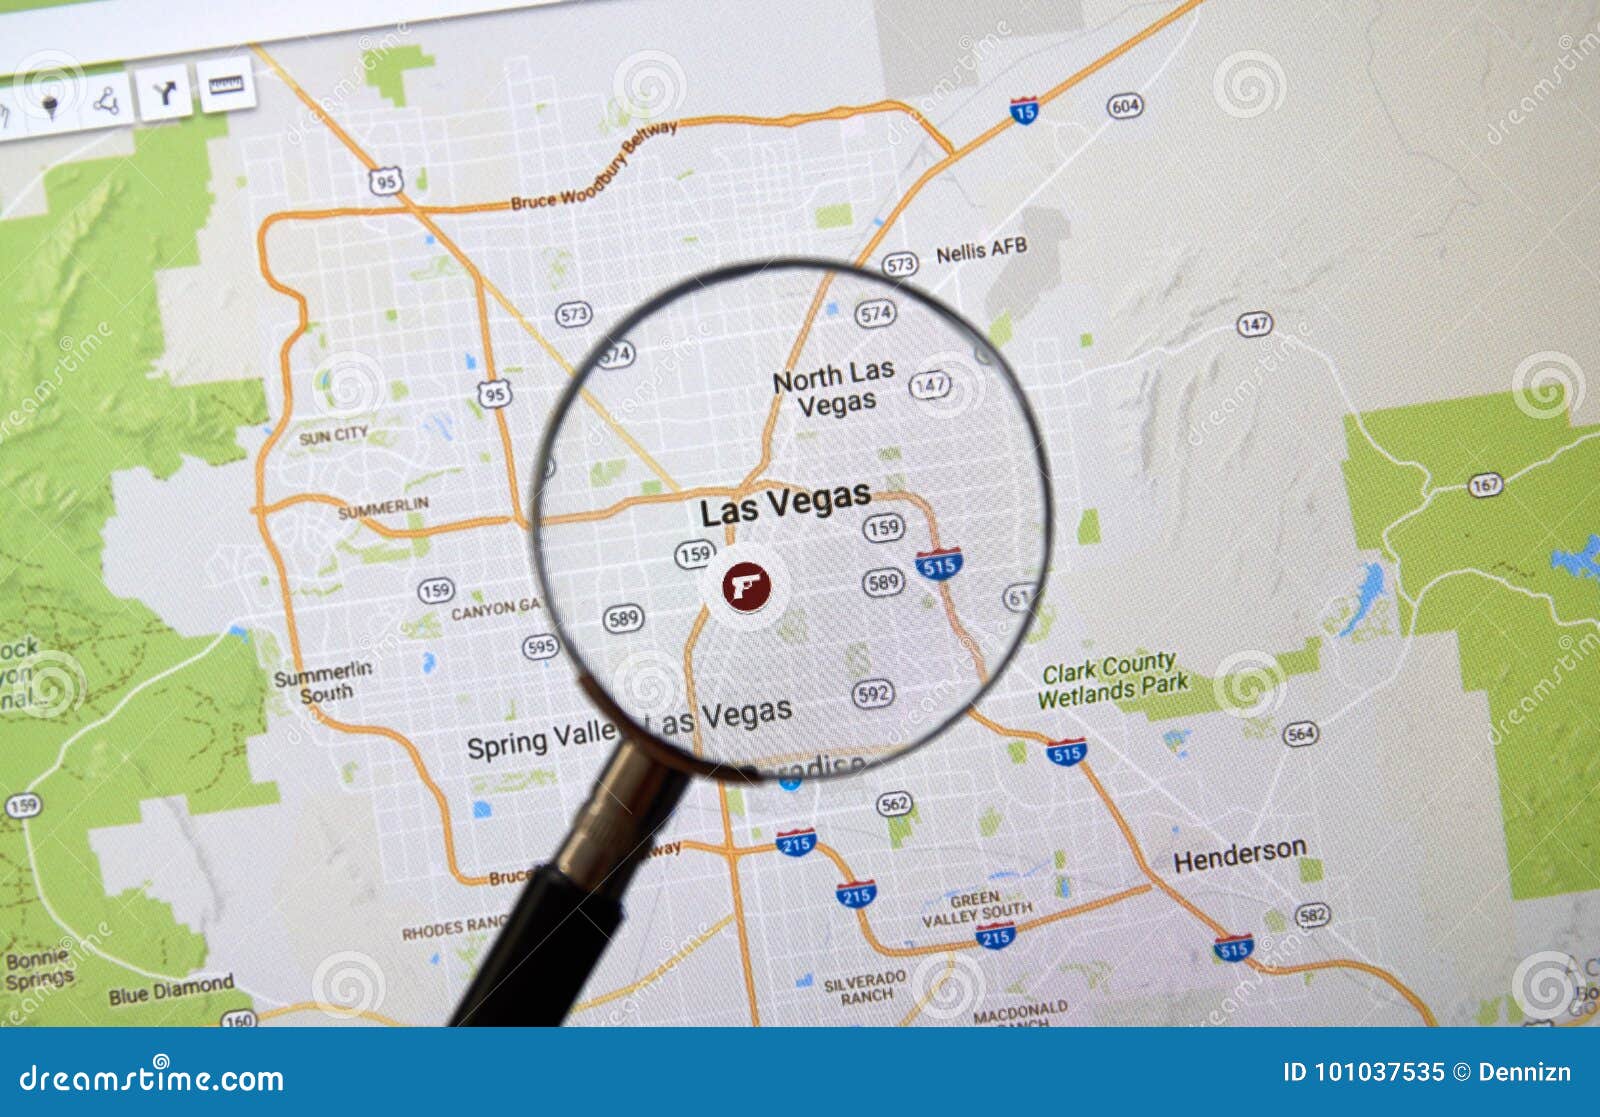 Las Vegas On Google Map Editorial Image Image Of Make 101037535